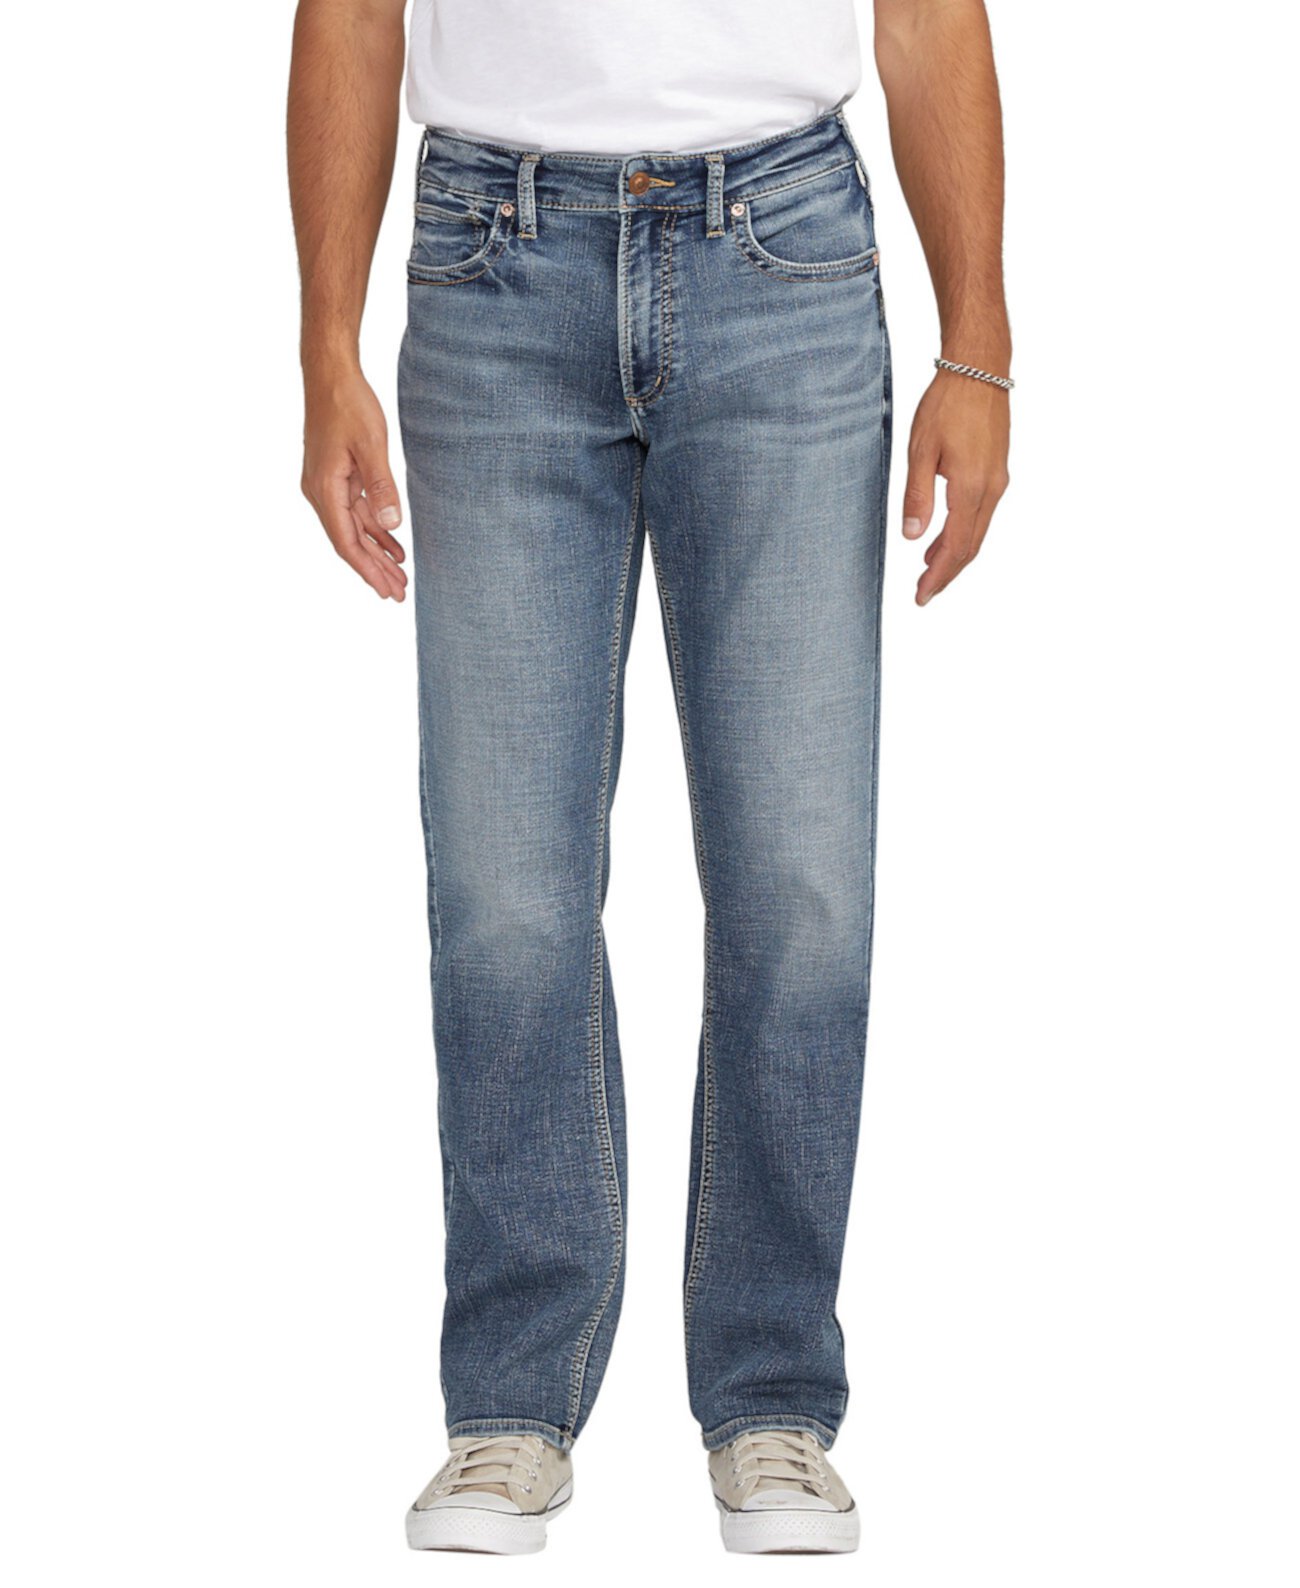 Мужские джинсы прямого кроя классического кроя Grayson Silver Jeans Co.